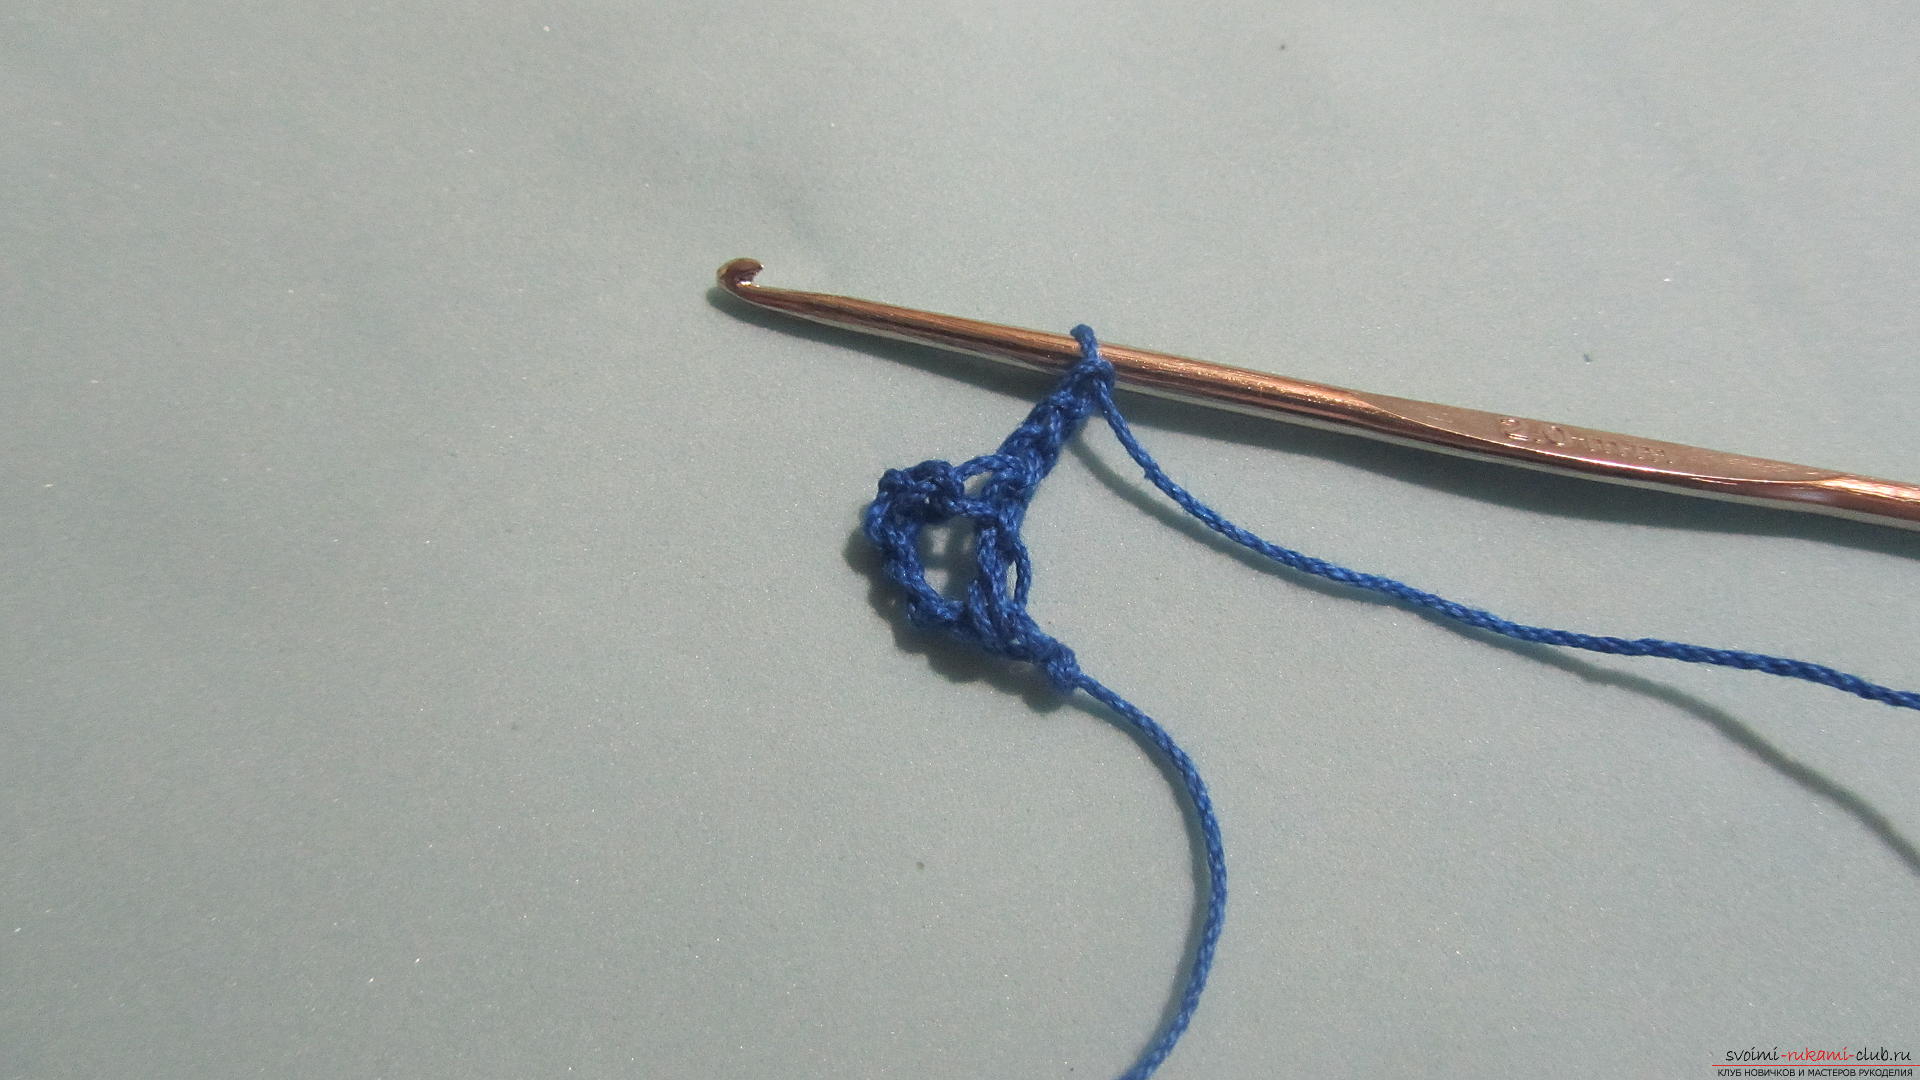 Этот мастер-класс расскажет о том, как создавать украшения крючком - вязанные браслеты. Фото №3